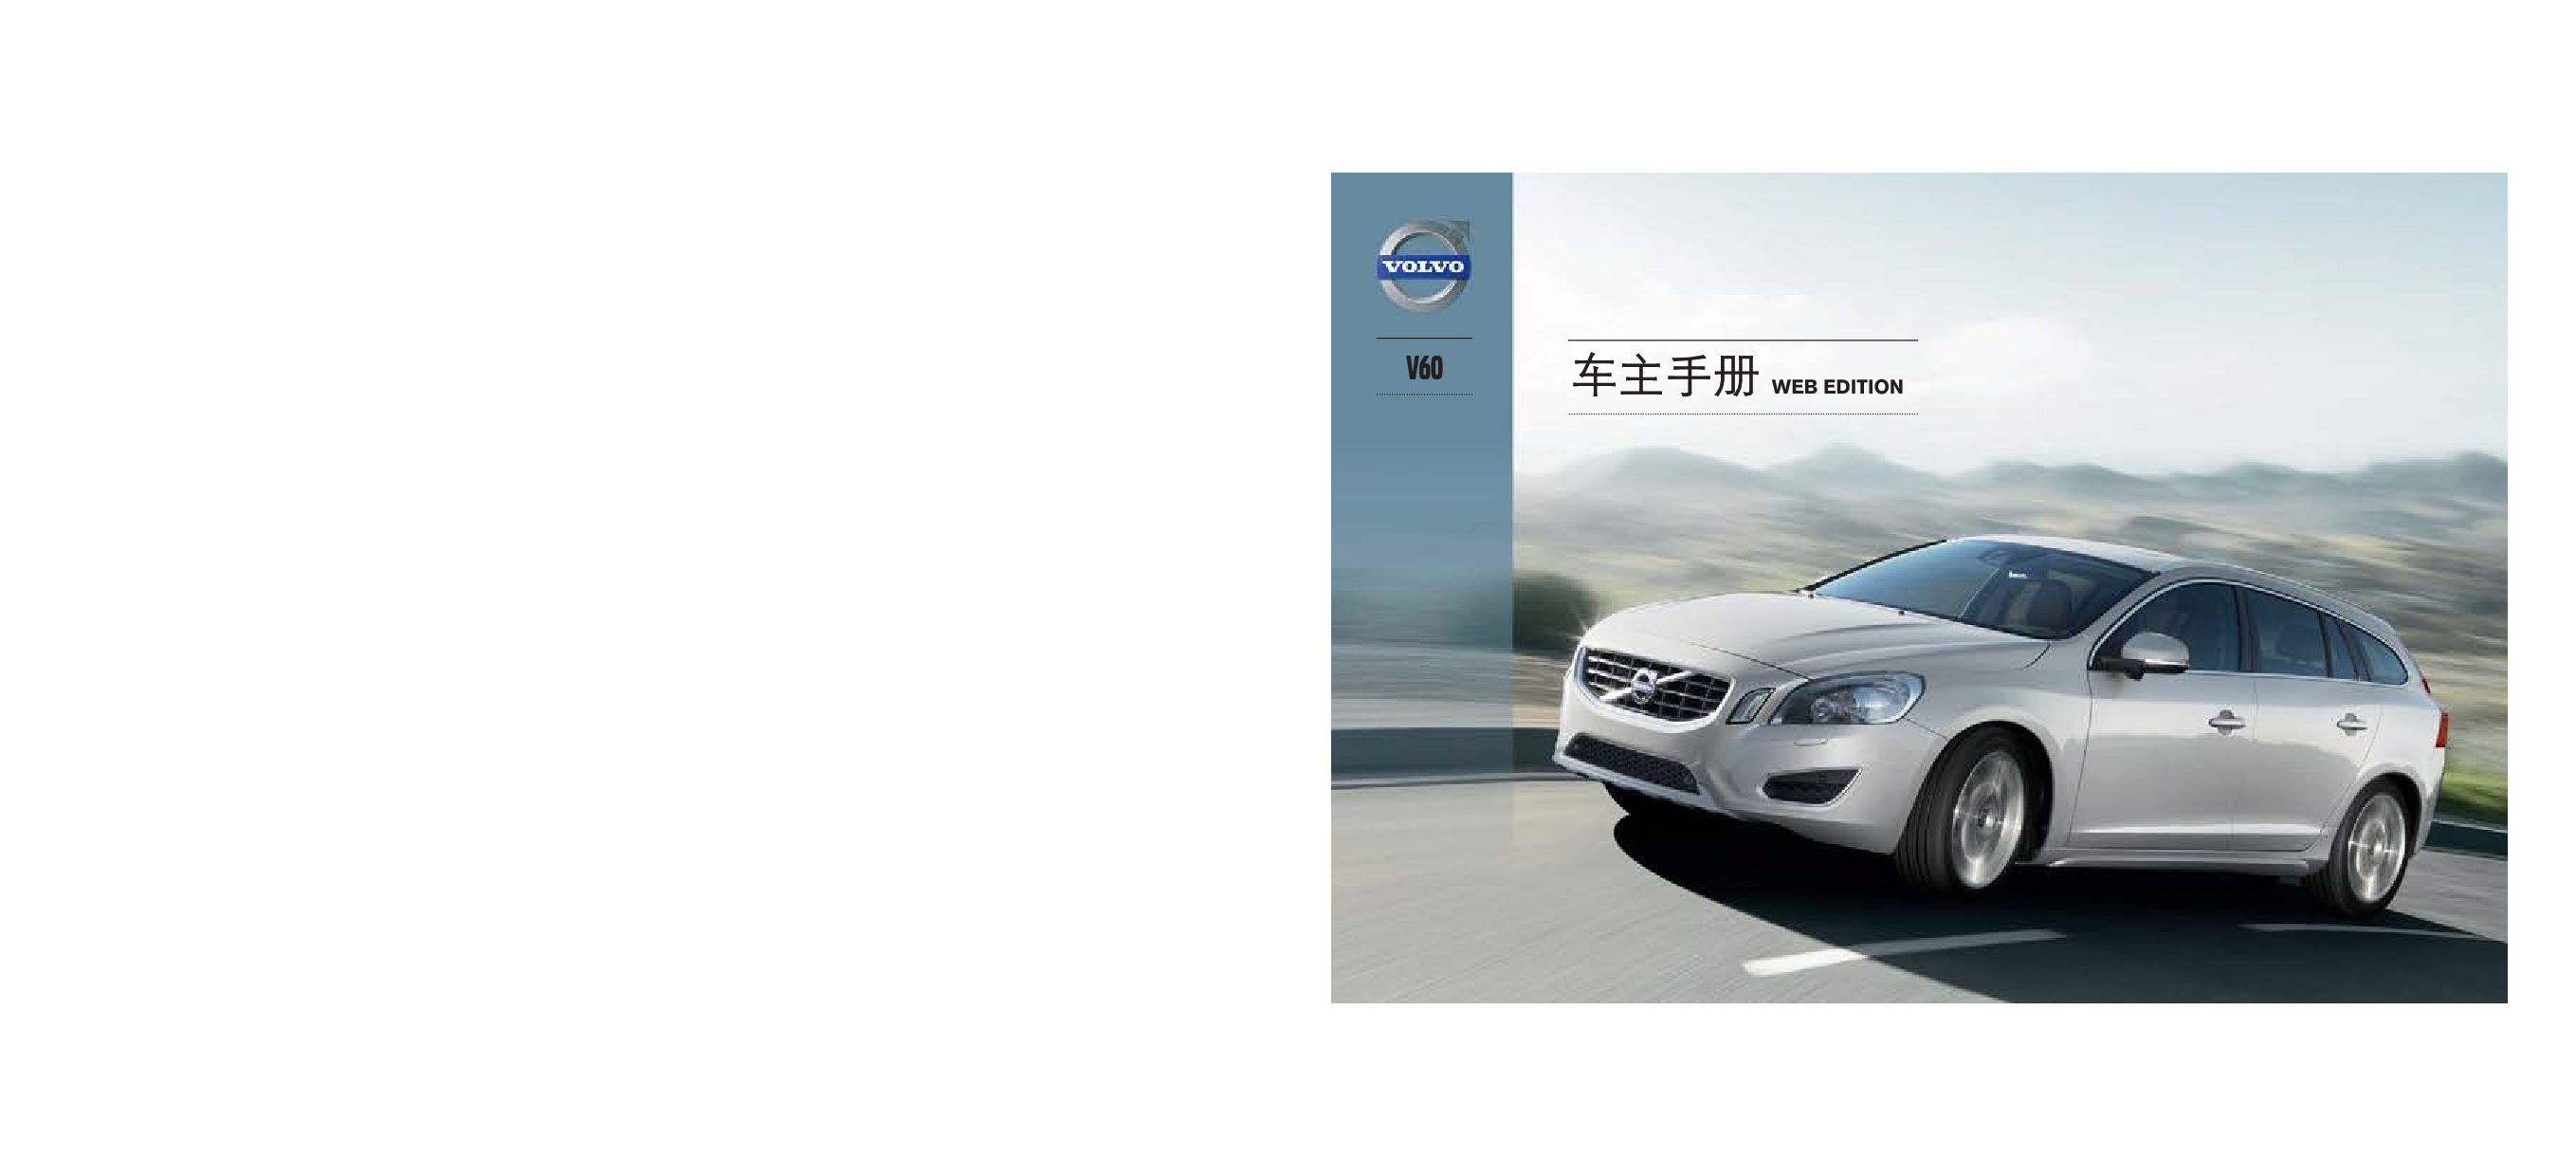 沃尔沃 Volvo V60 2013 用户手册 封面